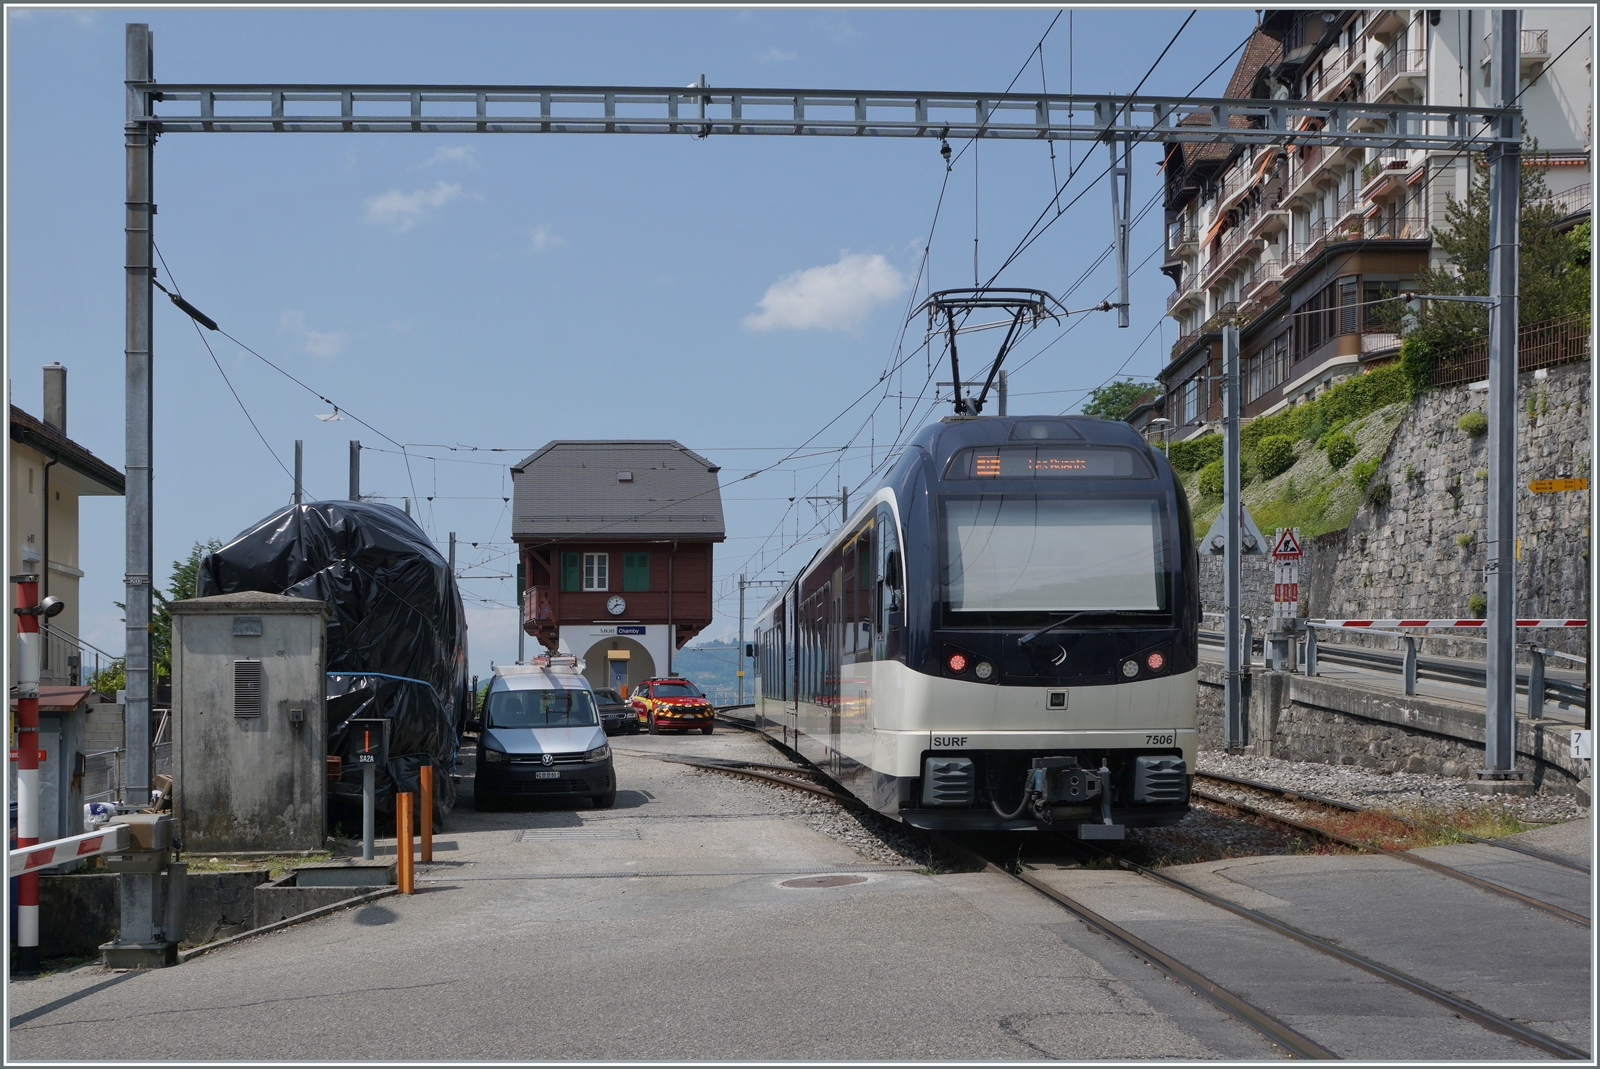 Der CEV/MVR ABeh 2/6 7506 auf der Fahrt von Montreux nach Chamby erreicht Chamby; link im Bild vereckt bzw. eingepackt steht wahrscheinlich der CEV BDe 4/4 105 der wohl nun endlich bei der B-C überarbeitet wird.

28. Mai 2023  